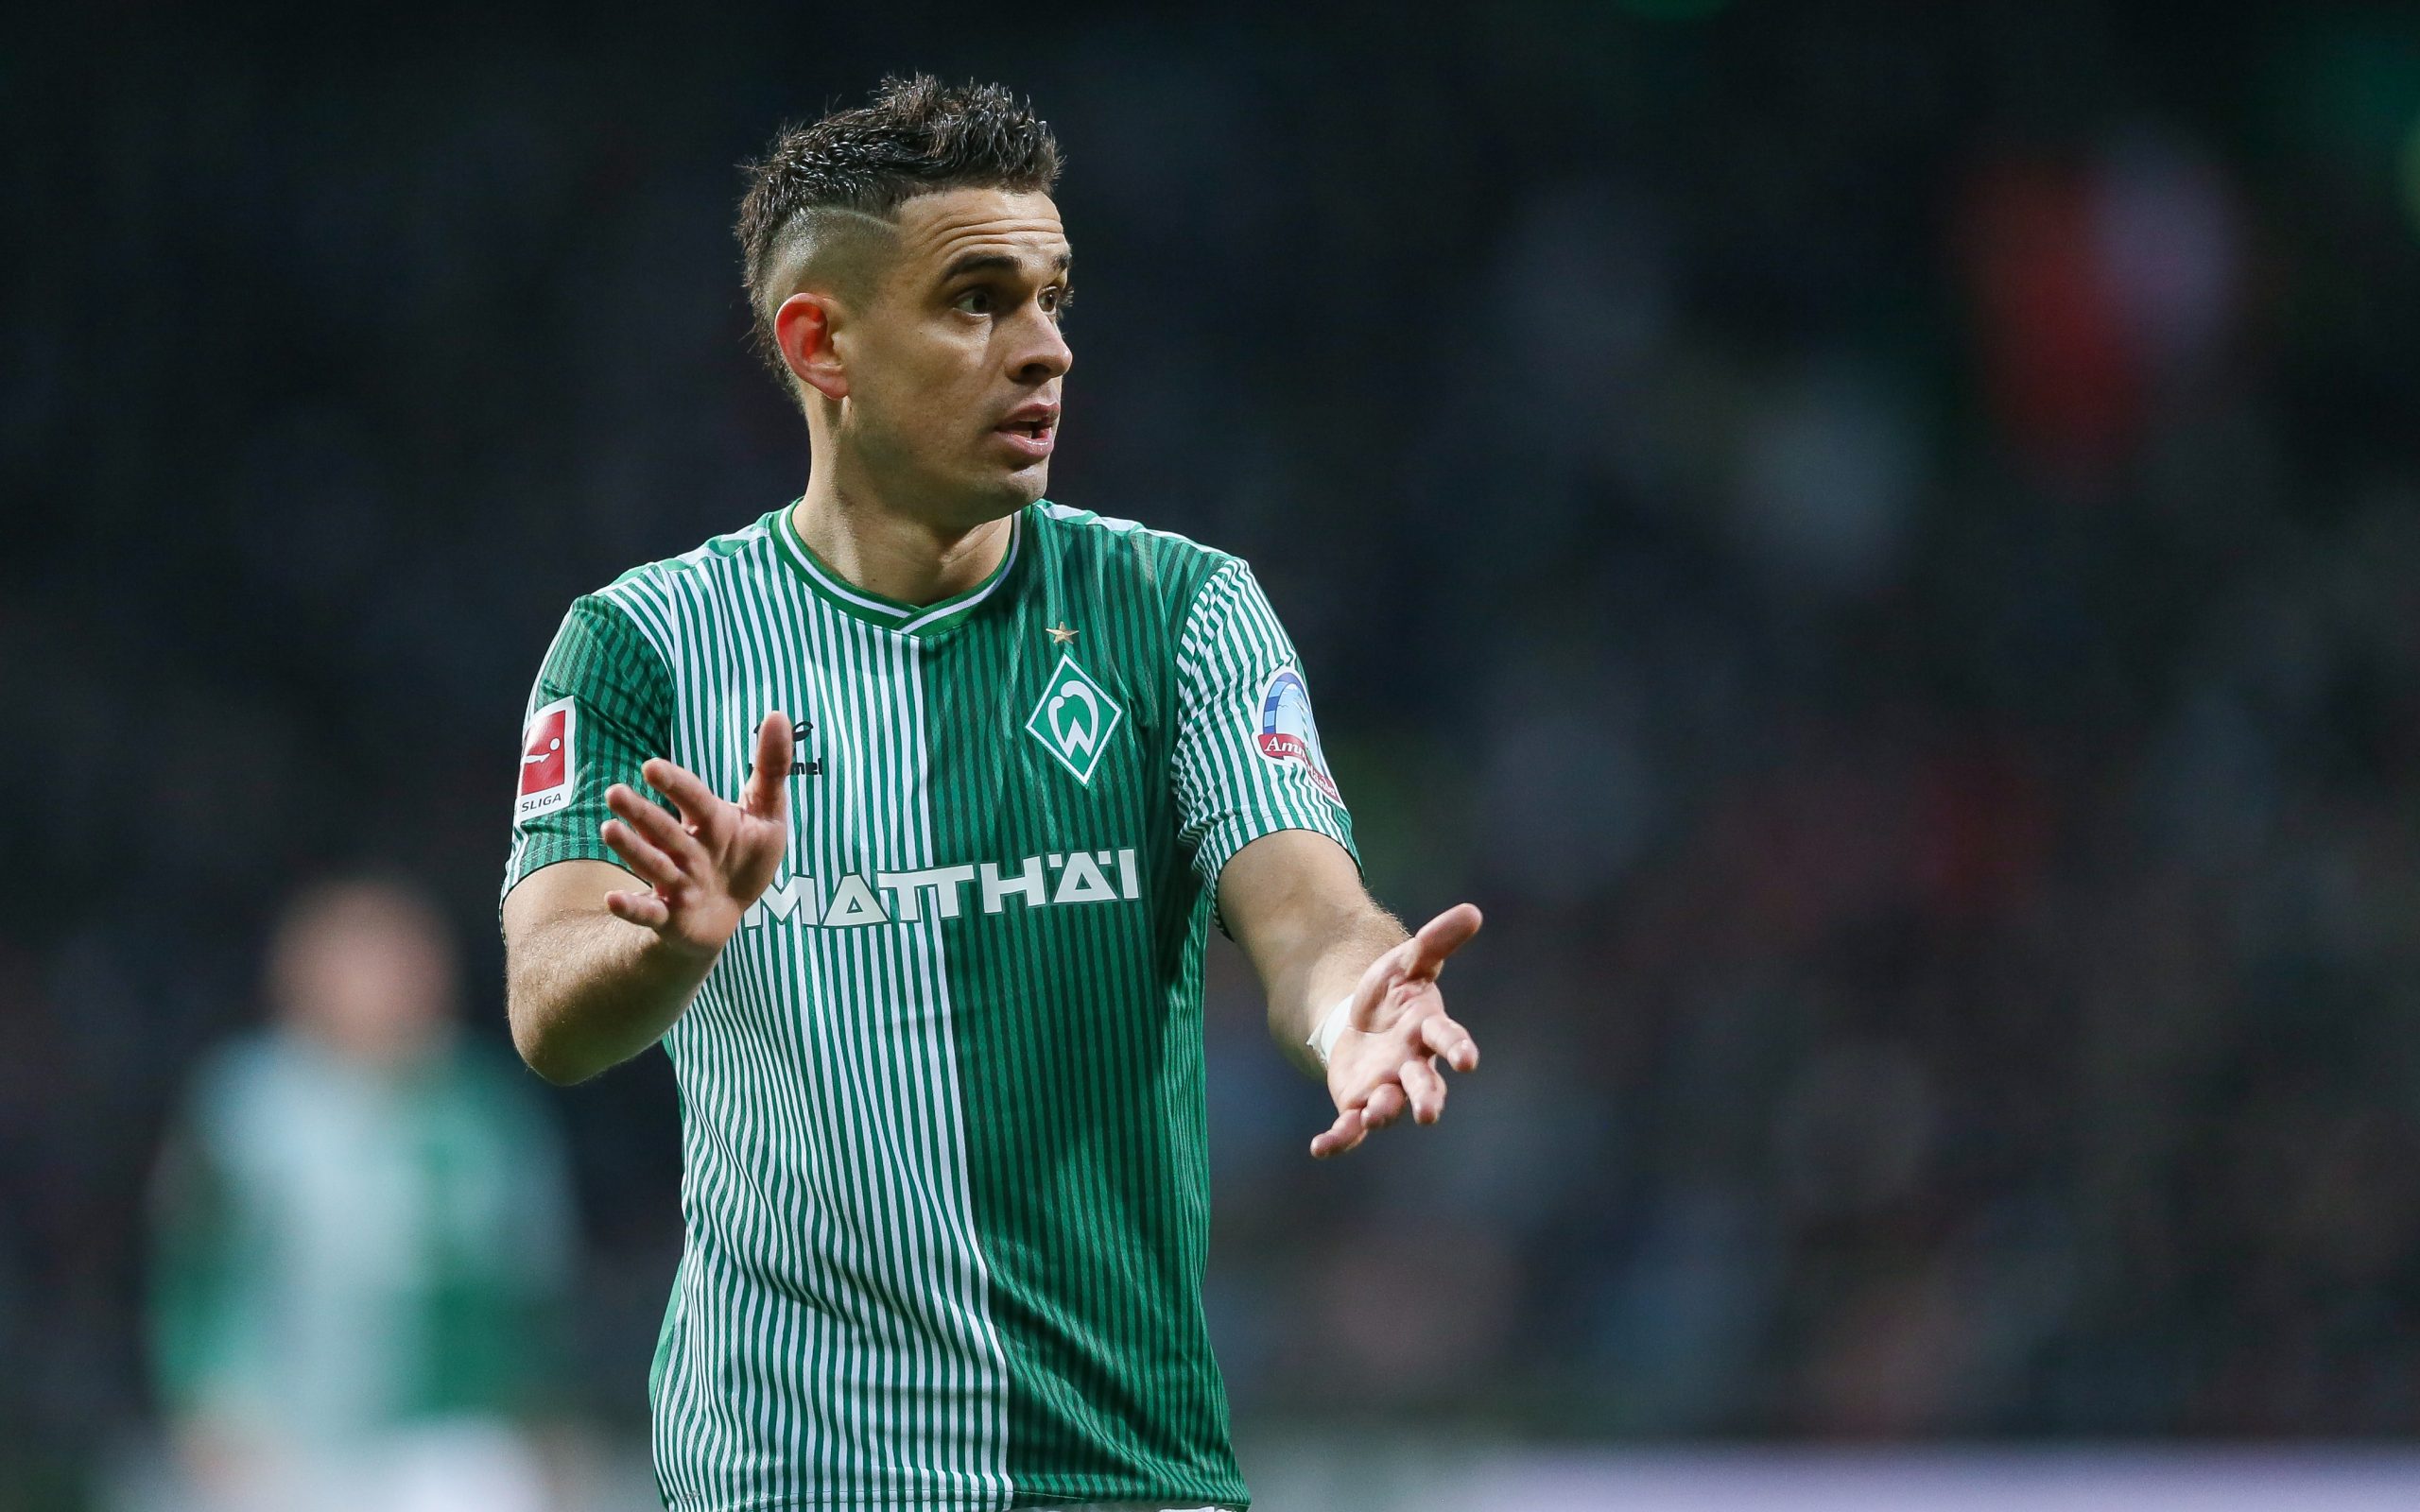 São 14 jogos de Borré pelo Werder Bremen, com quatro gols marcados - (Foto: Selim Sudheimer/Getty Images)